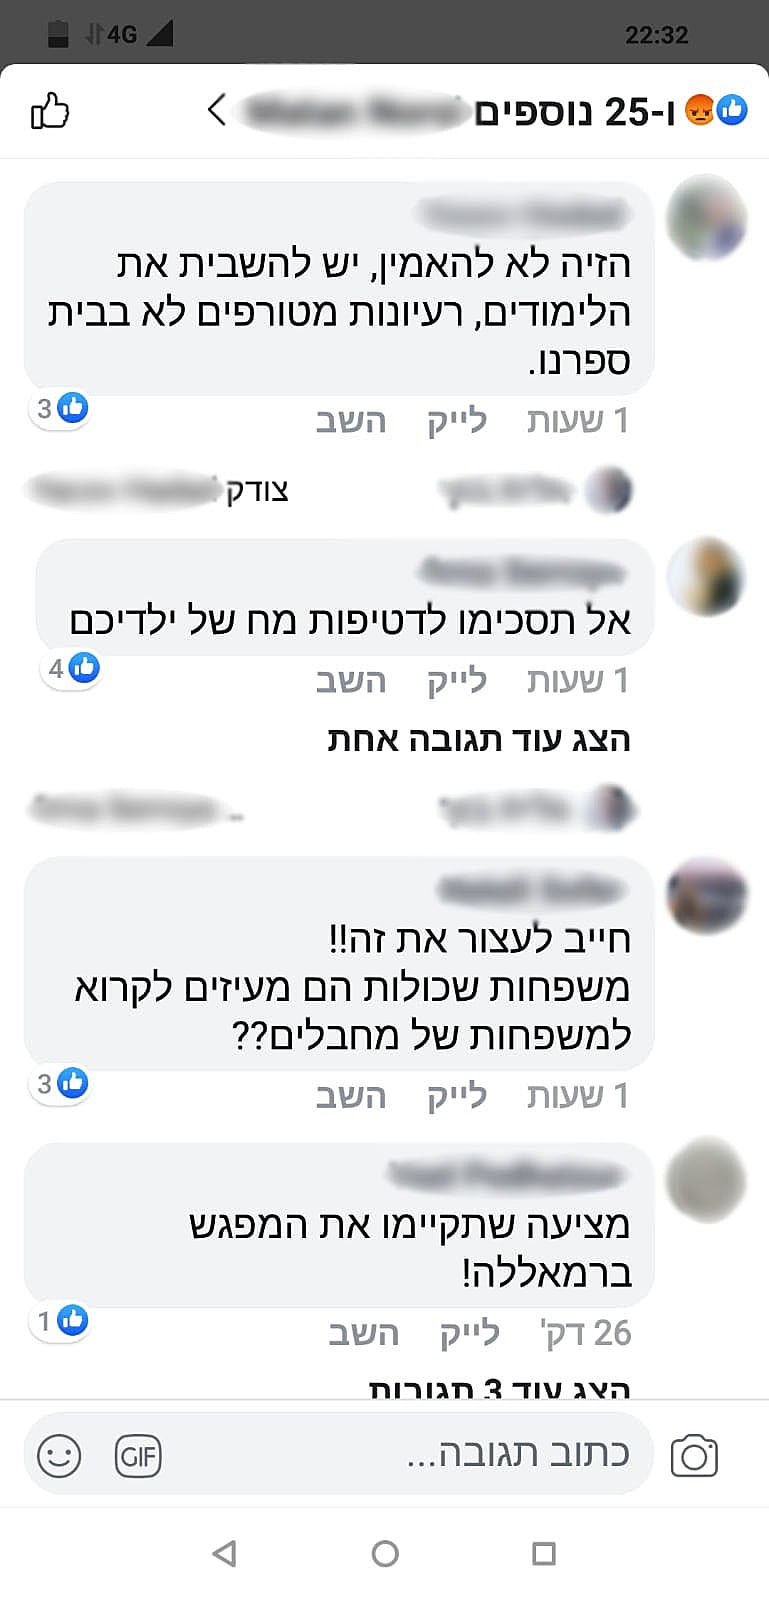 הפוסט בפייסבוק אודות המפגש משותף בין ישראלים לפלסטינים